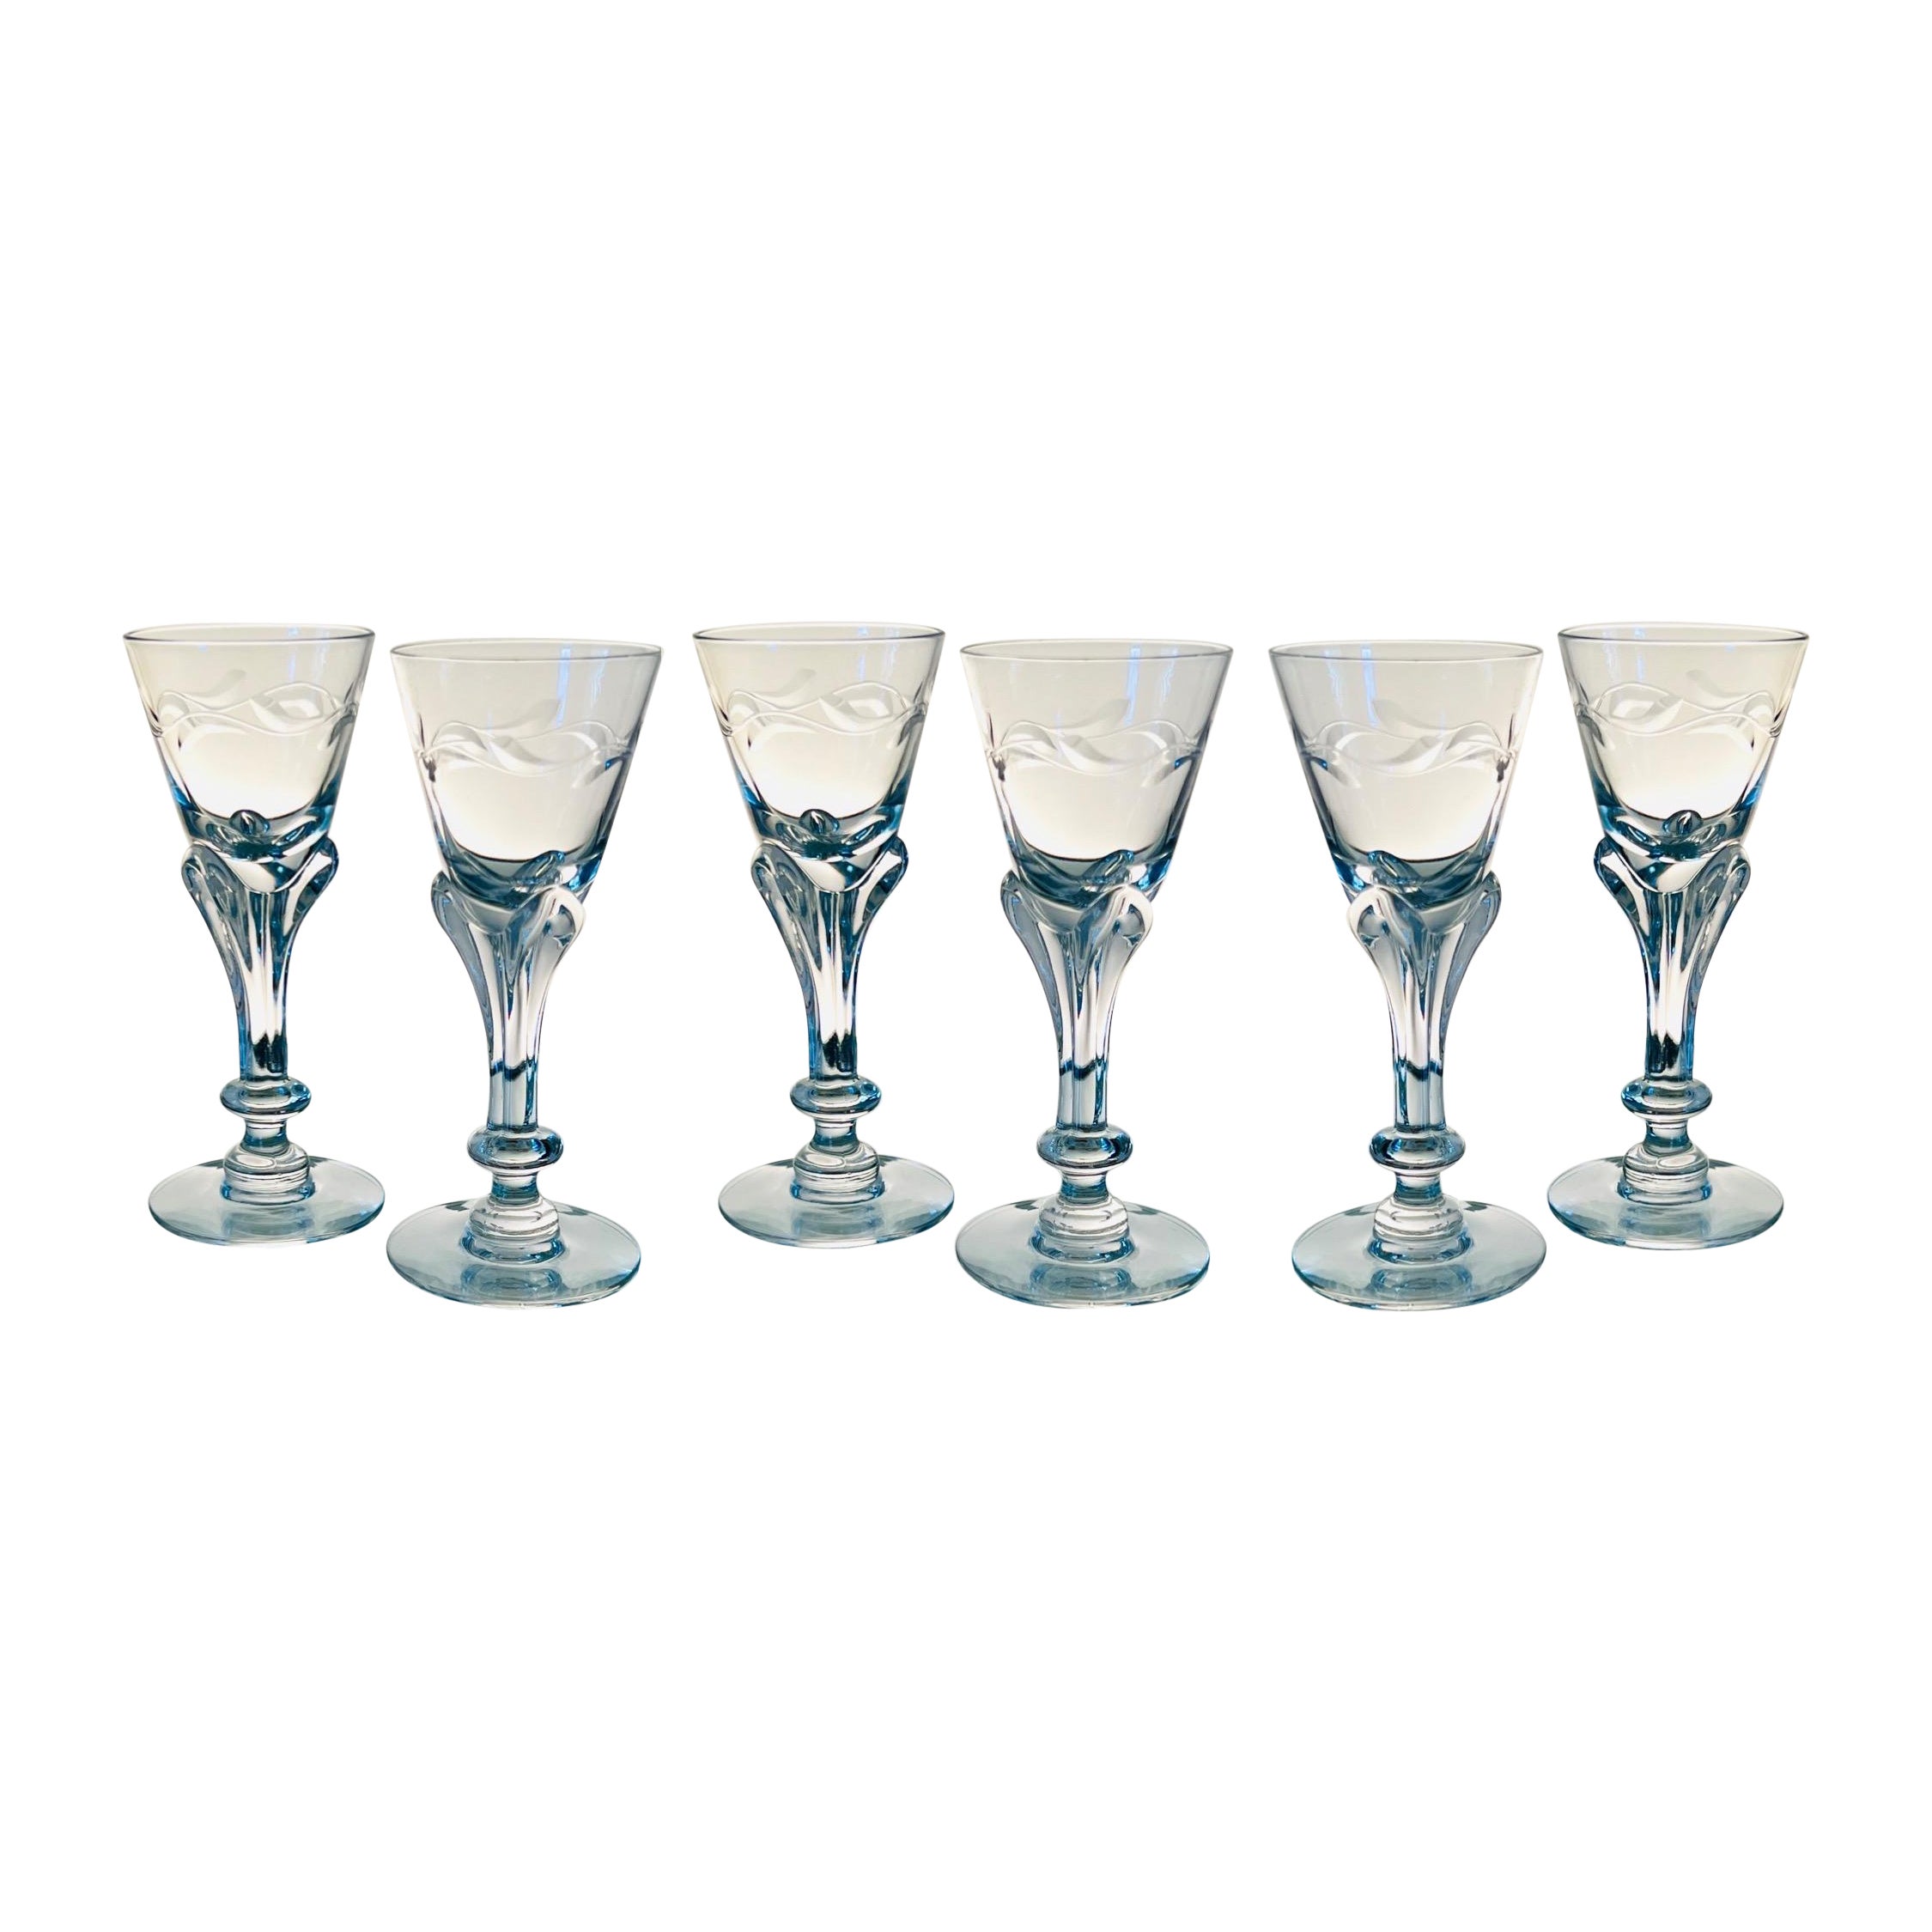 Verres à cordial en cristal Art Nouveau de Tiffin Glass, ensemble de dix